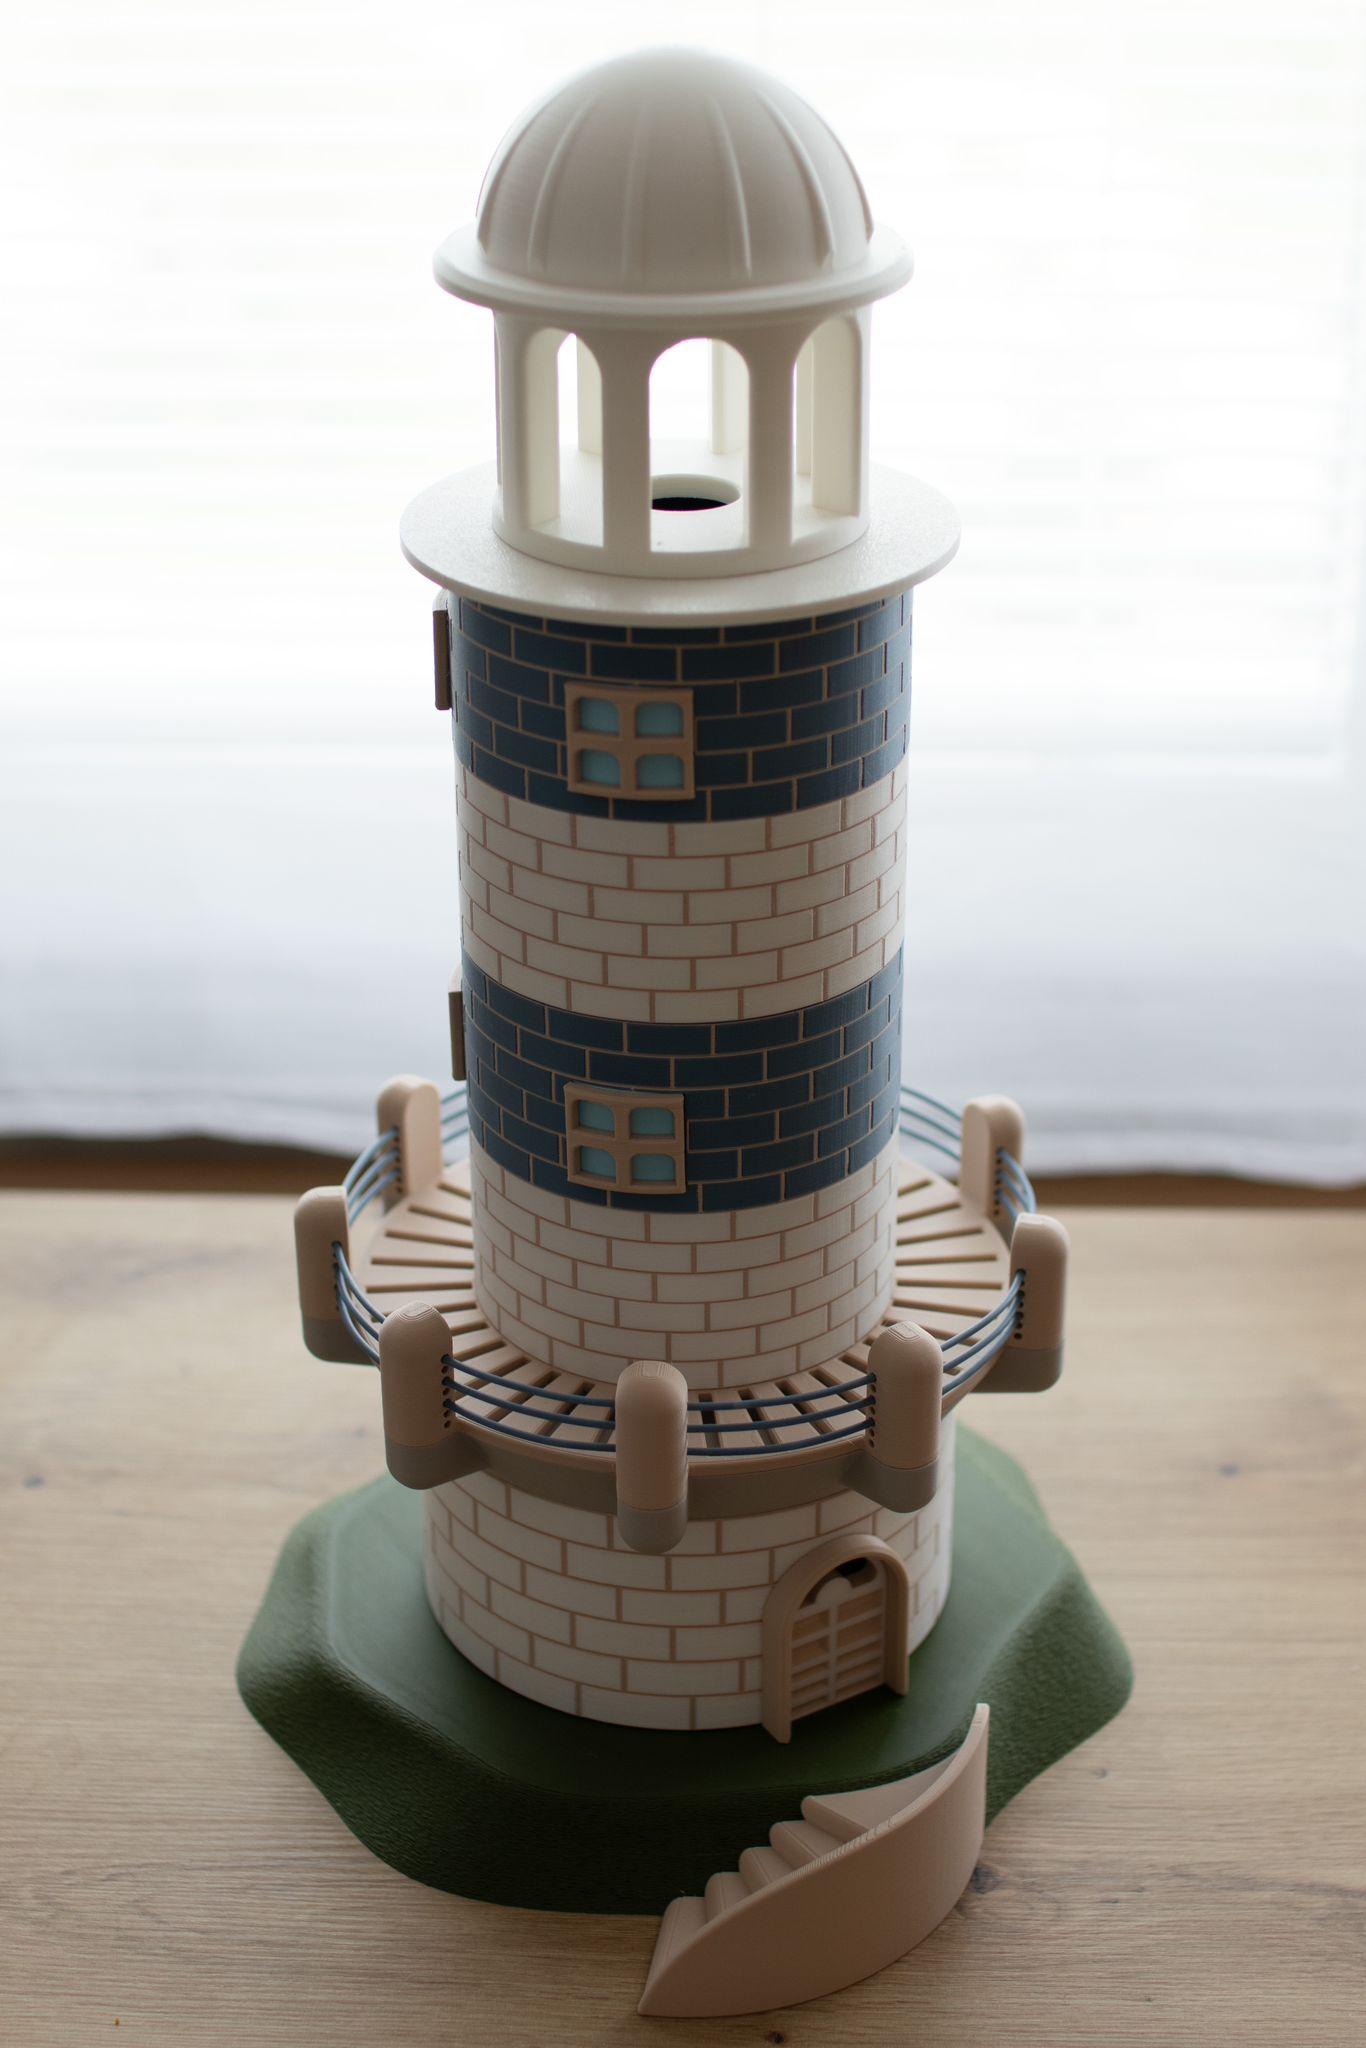  Lighthouse 7.3 3d model